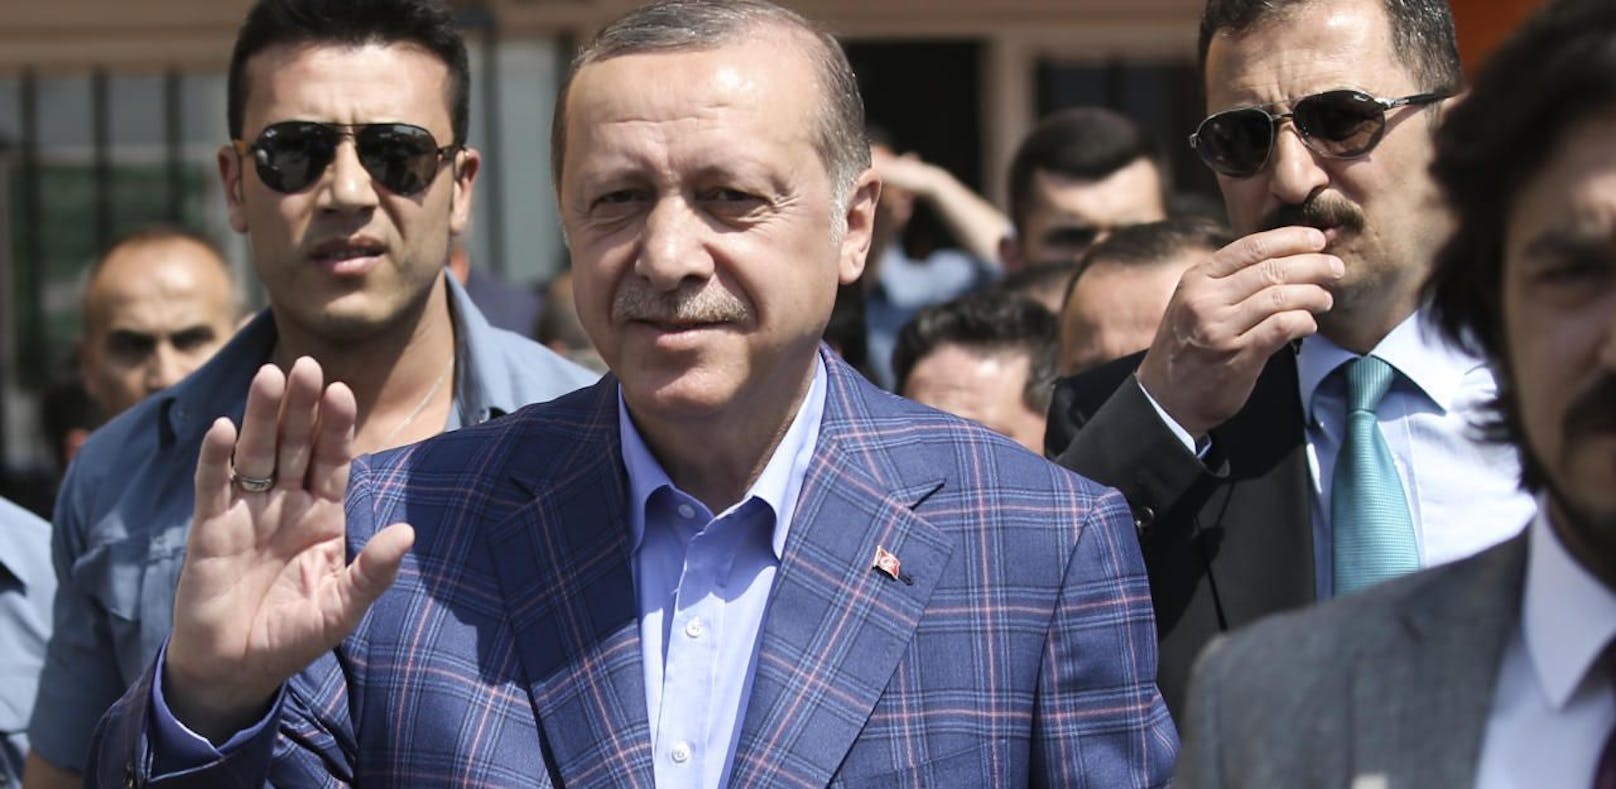 Der türkische PräsidentErdogan wurde von seinem US-Amtskollegen Trump ins Weiße Haus eingeladen.